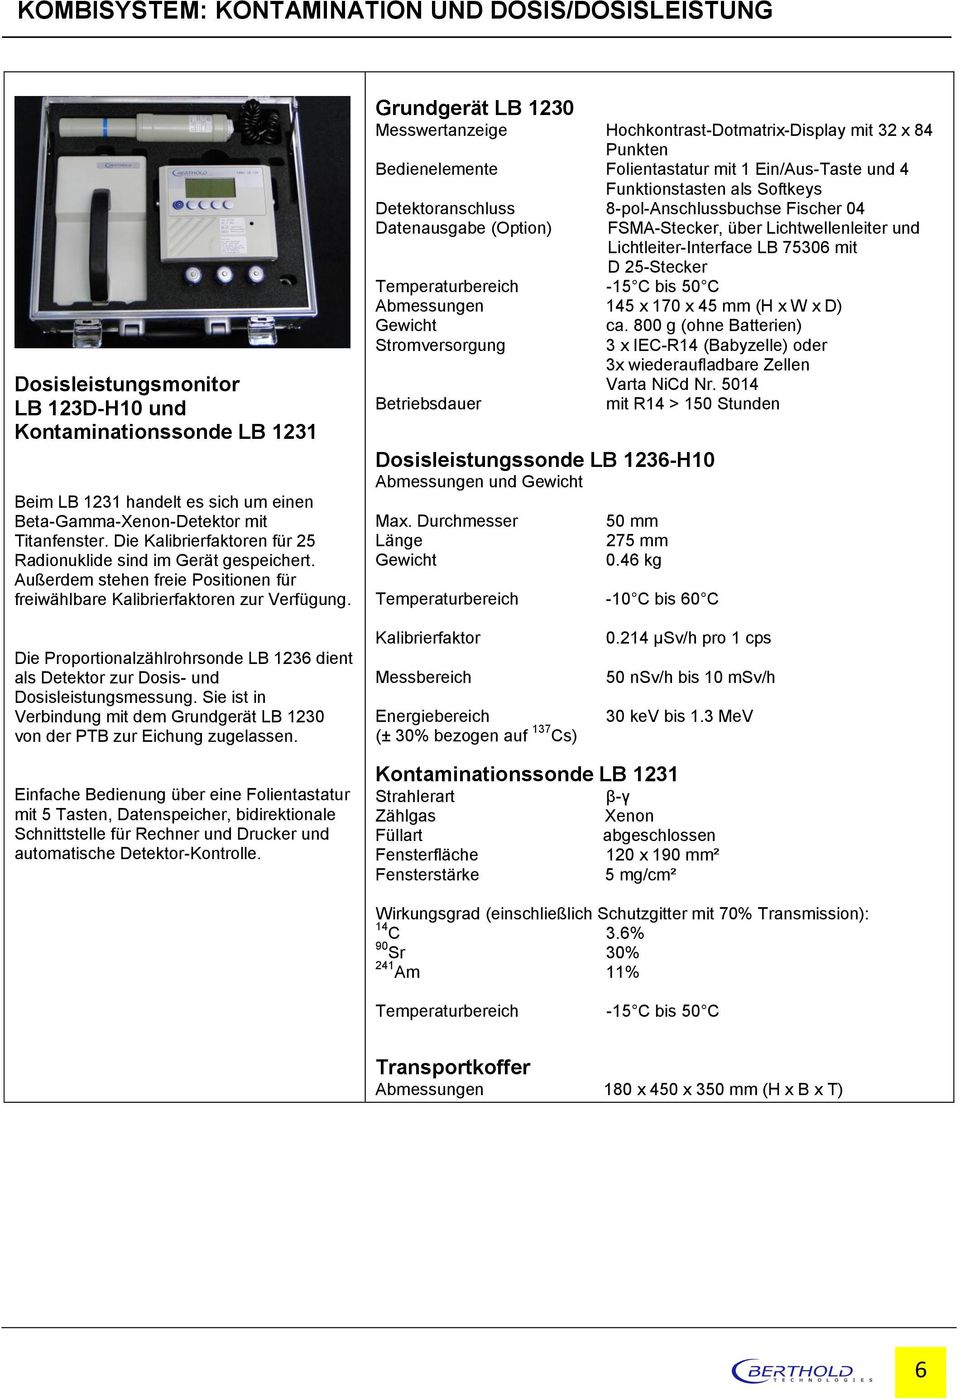 Grundgerät LB 1230 Messwertanzeige Hochkontrast-Dotmatrix-Display mit 32 x 84 Punkten Bedienelemente Folientastatur mit 1 Ein/Aus-Taste und 4 Funktionstasten als Softkeys Detektoranschluss